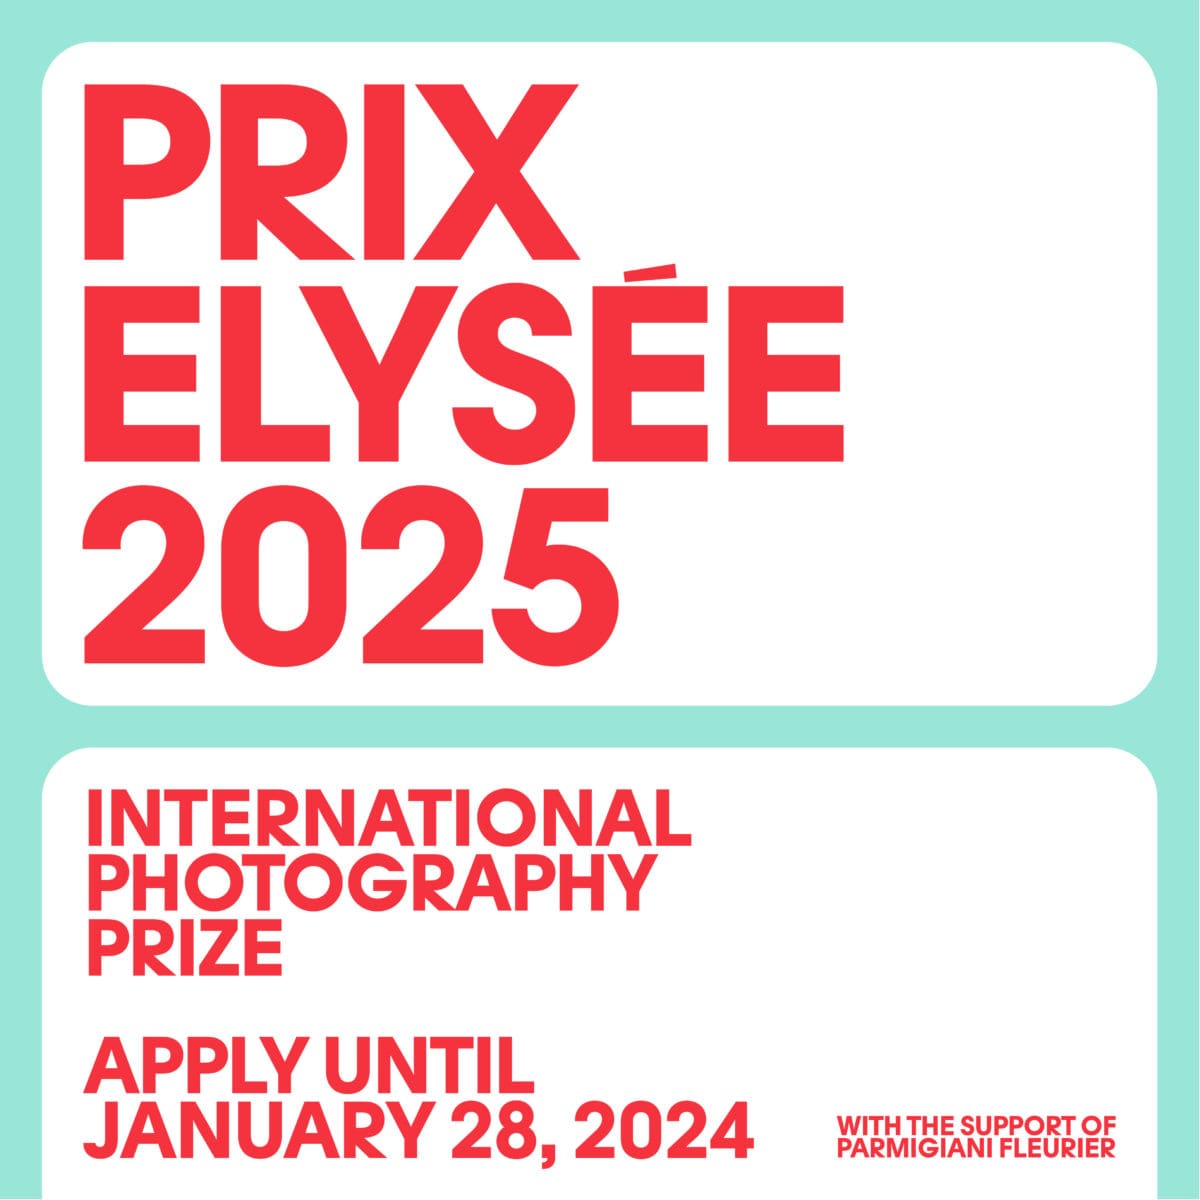 Il Prix Elysée 2025 premia fotografi di talento con 80.000 franchi. Candidature aperte per sostegno a progetti fotografici innovativi